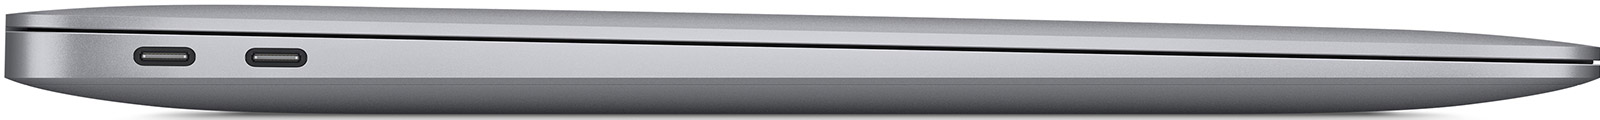 MacBook-Air-13-3-M1-8-Core-16-GB-2-TB-7-Core-Grafik-CH-Gold-05.jpg